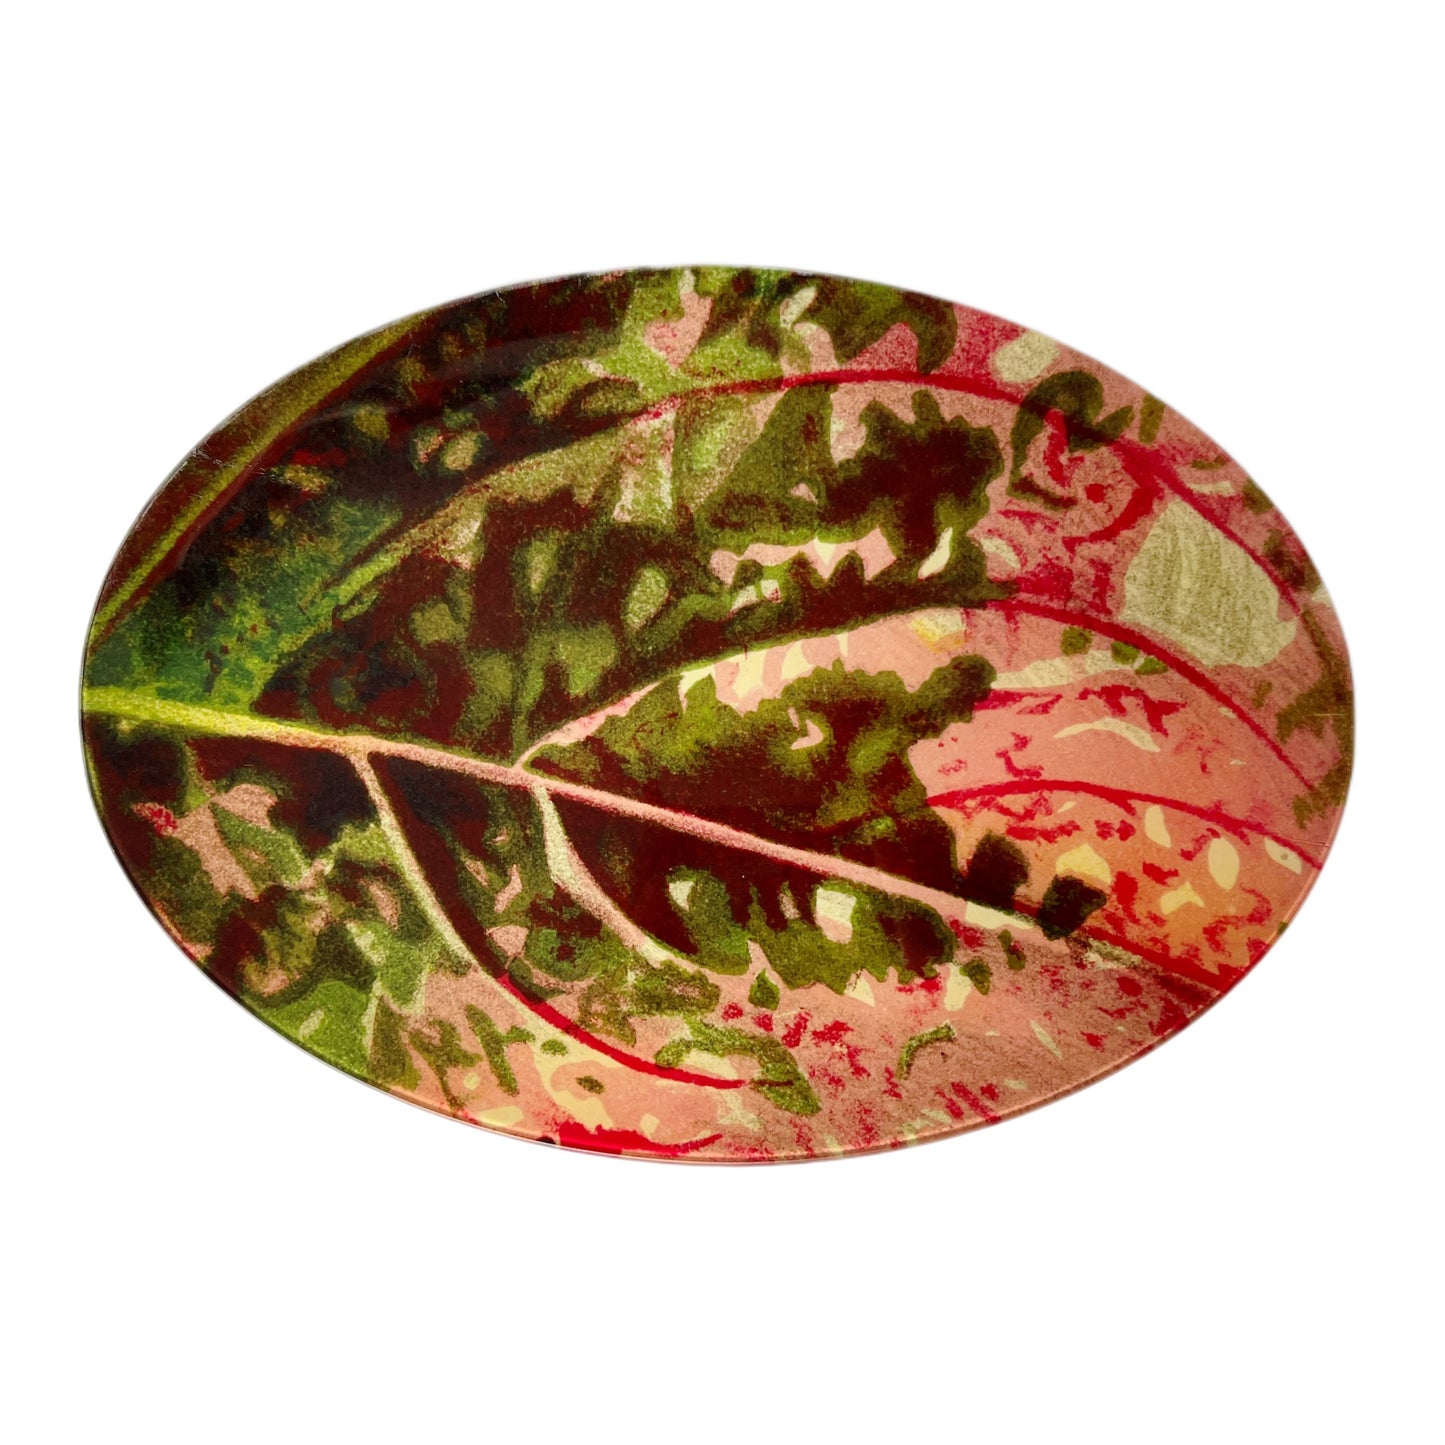 【JOHN DERIAN】デコパージュプレート Variegated Pink Coleus Leaf